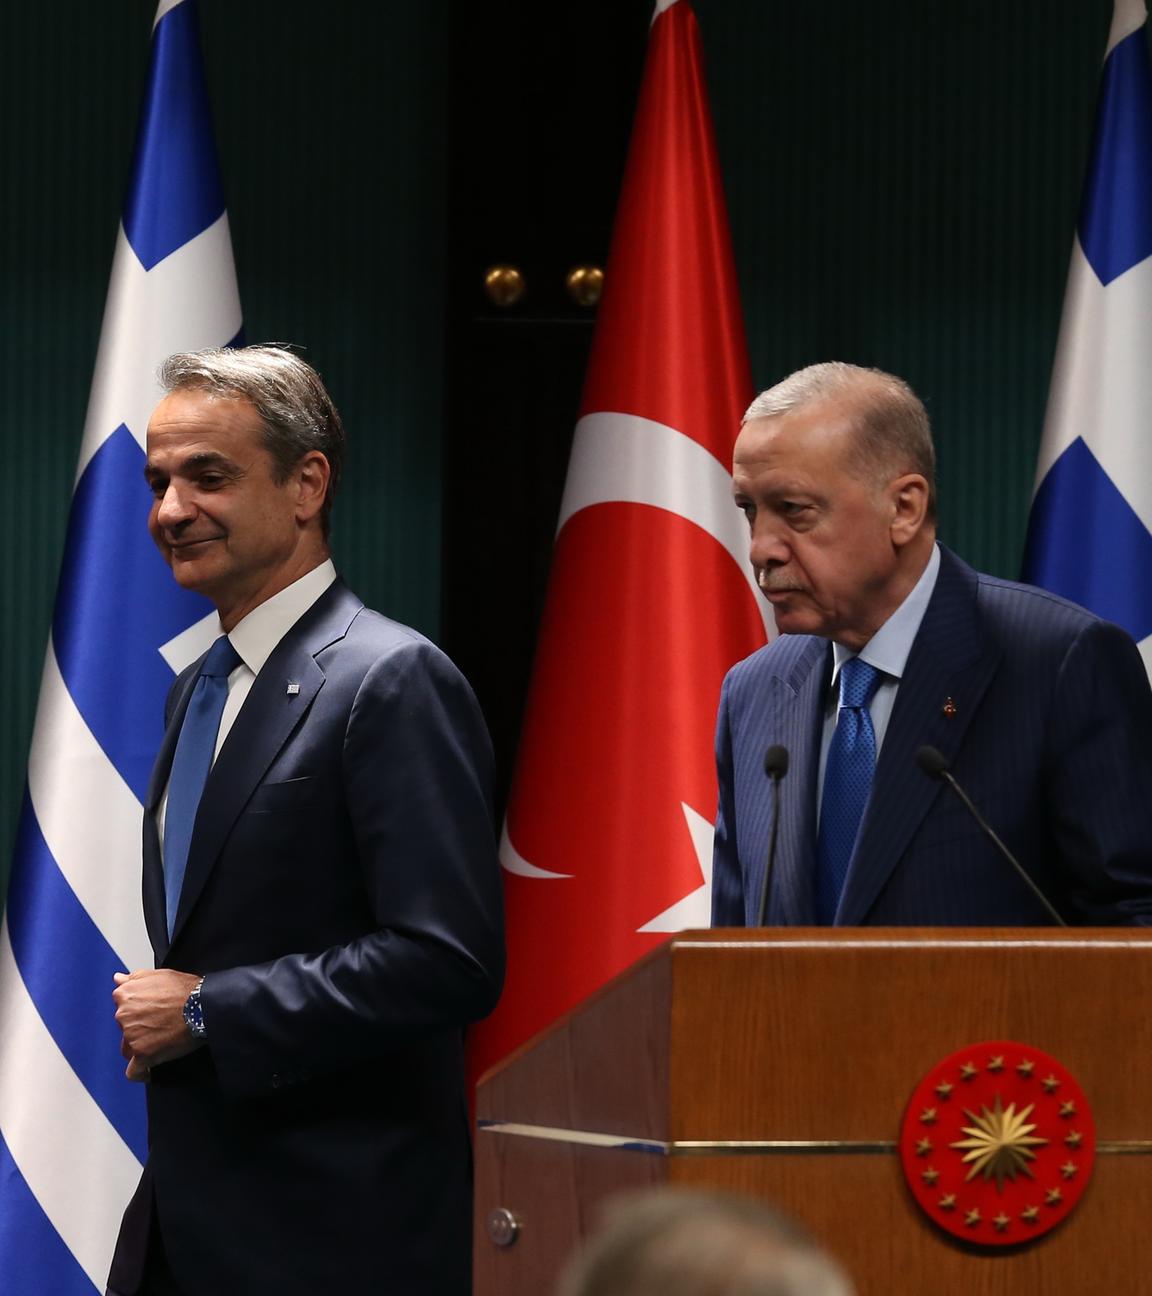 Der türkische Präsident Recep Tayyip Erdogan und der griechische Premierminister Kyriakos Mitsotakis gaben nach ihrem Treffen im Präsidentenpalast in Ankara eine Pressekonferenz.